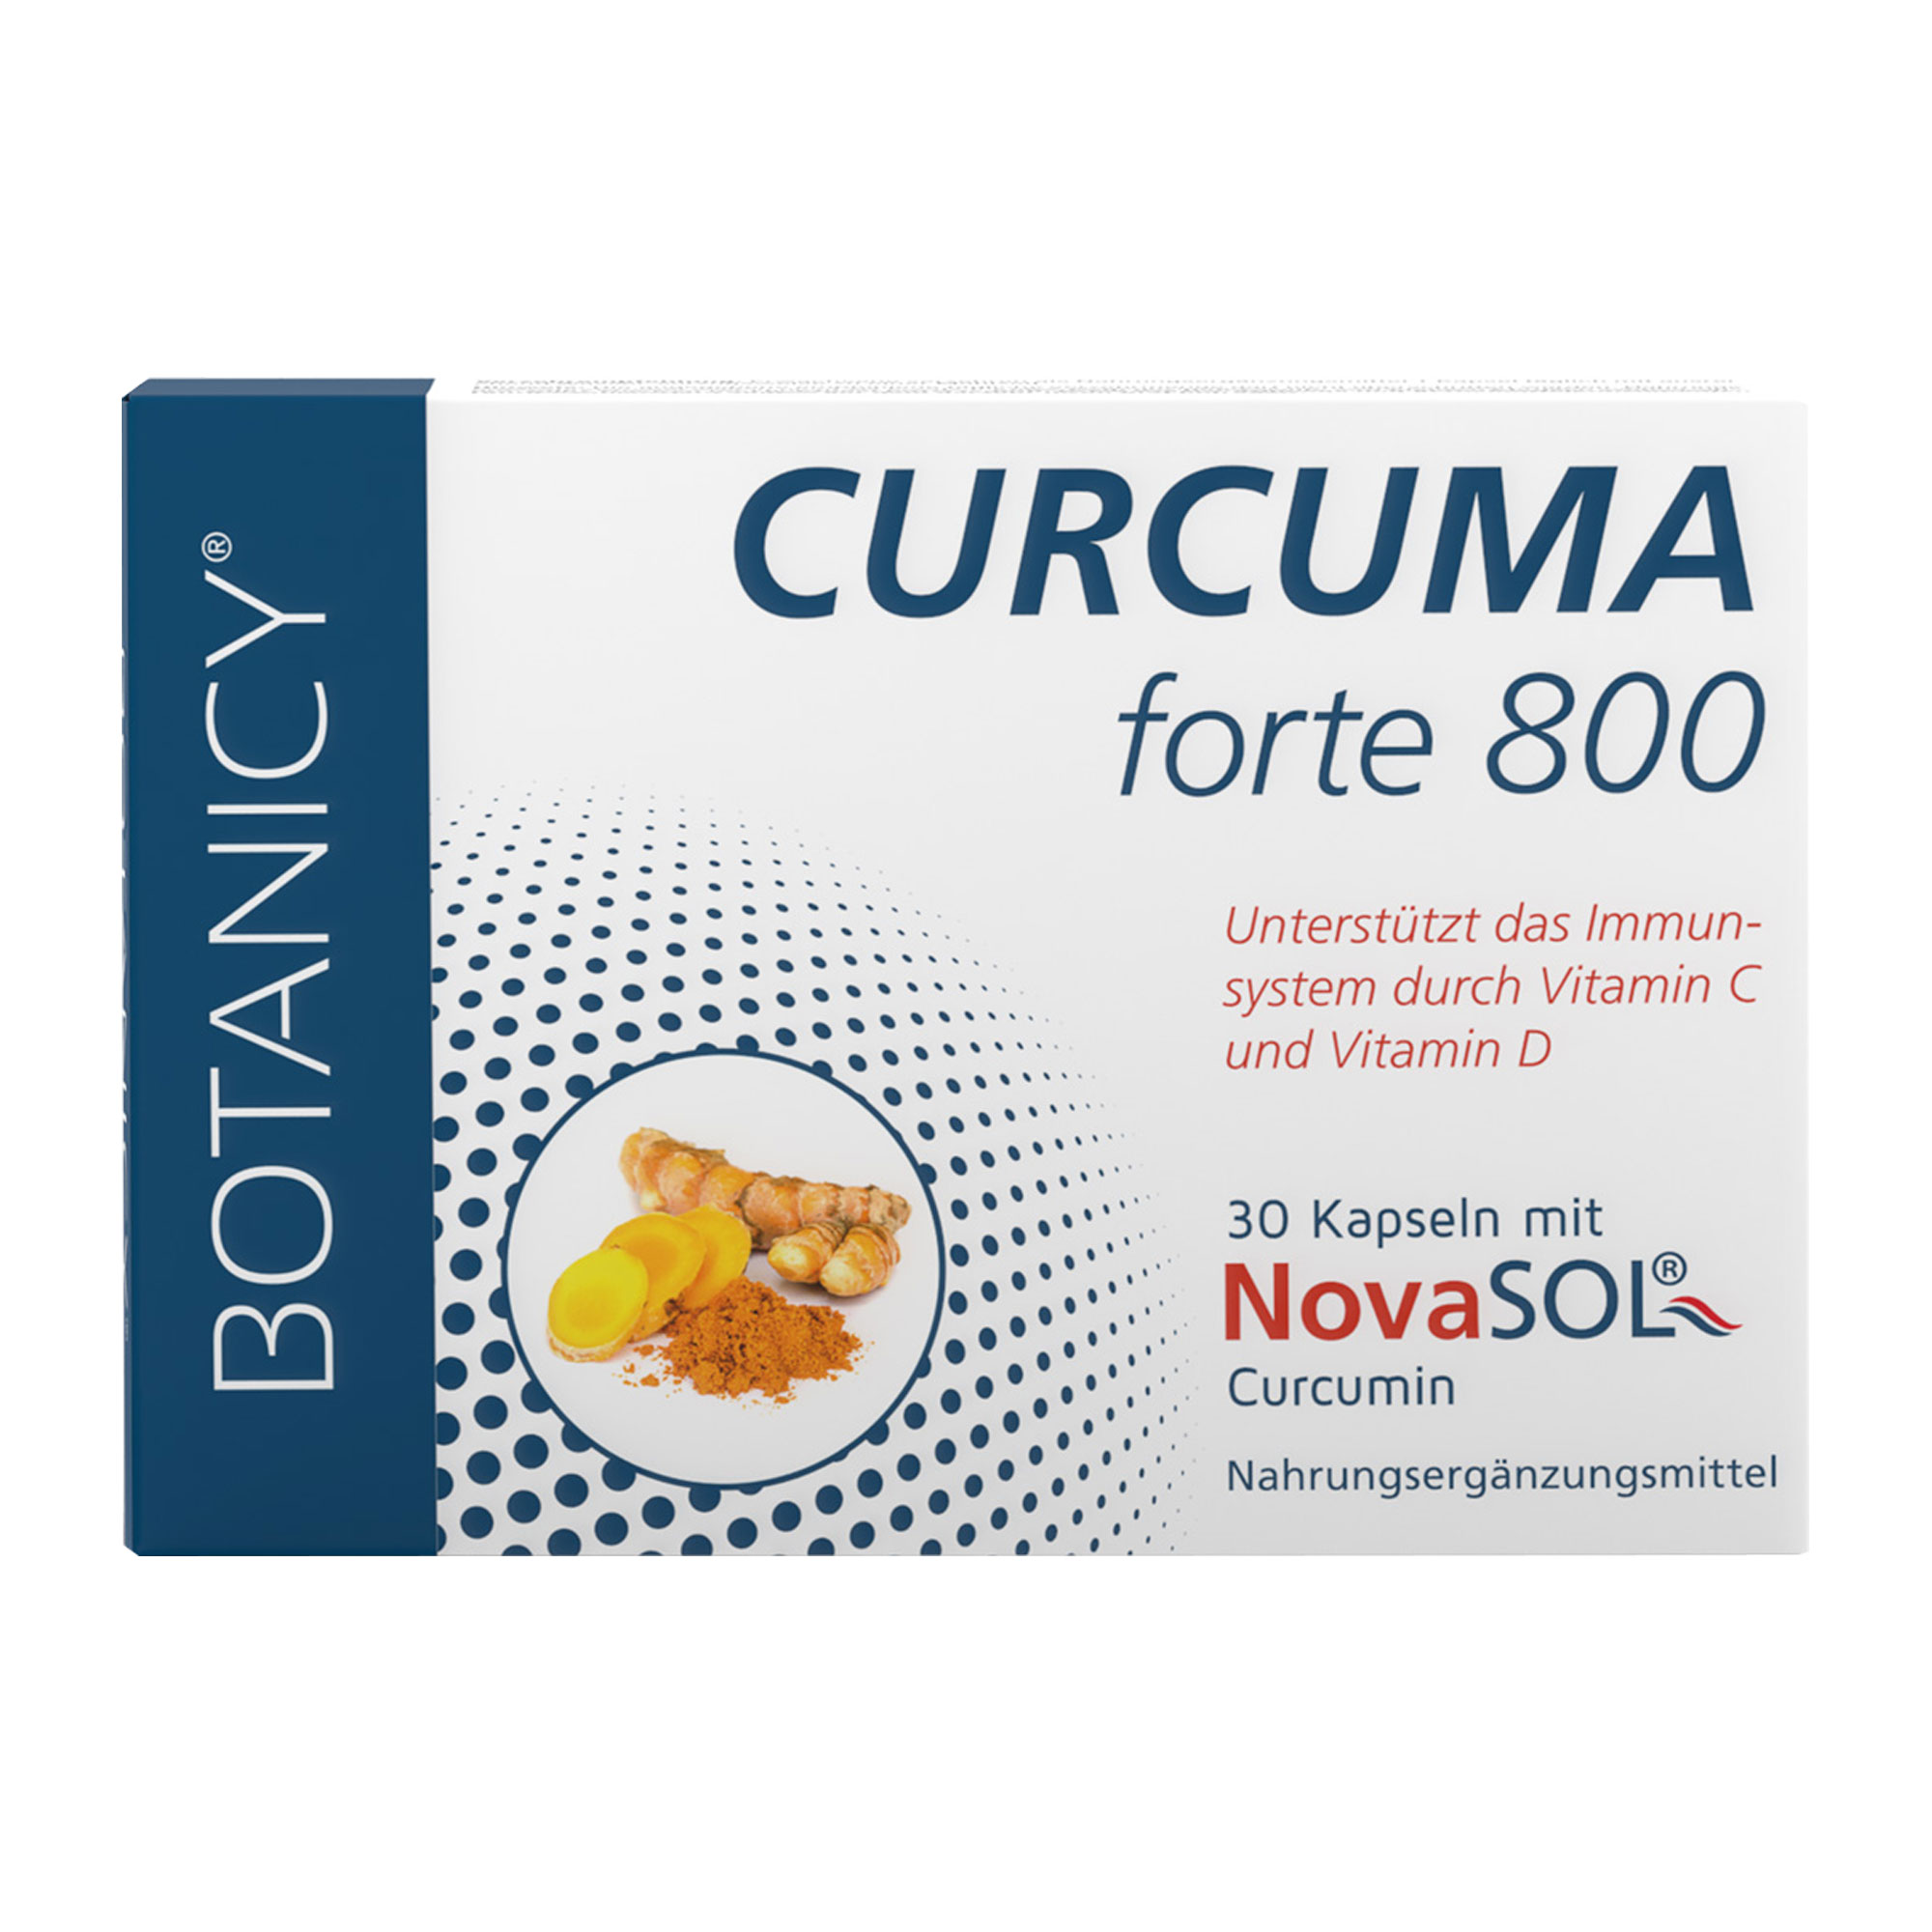 Nahrungsergänzungsmittel mit Curcuma-Extrakt und Vitaminen.